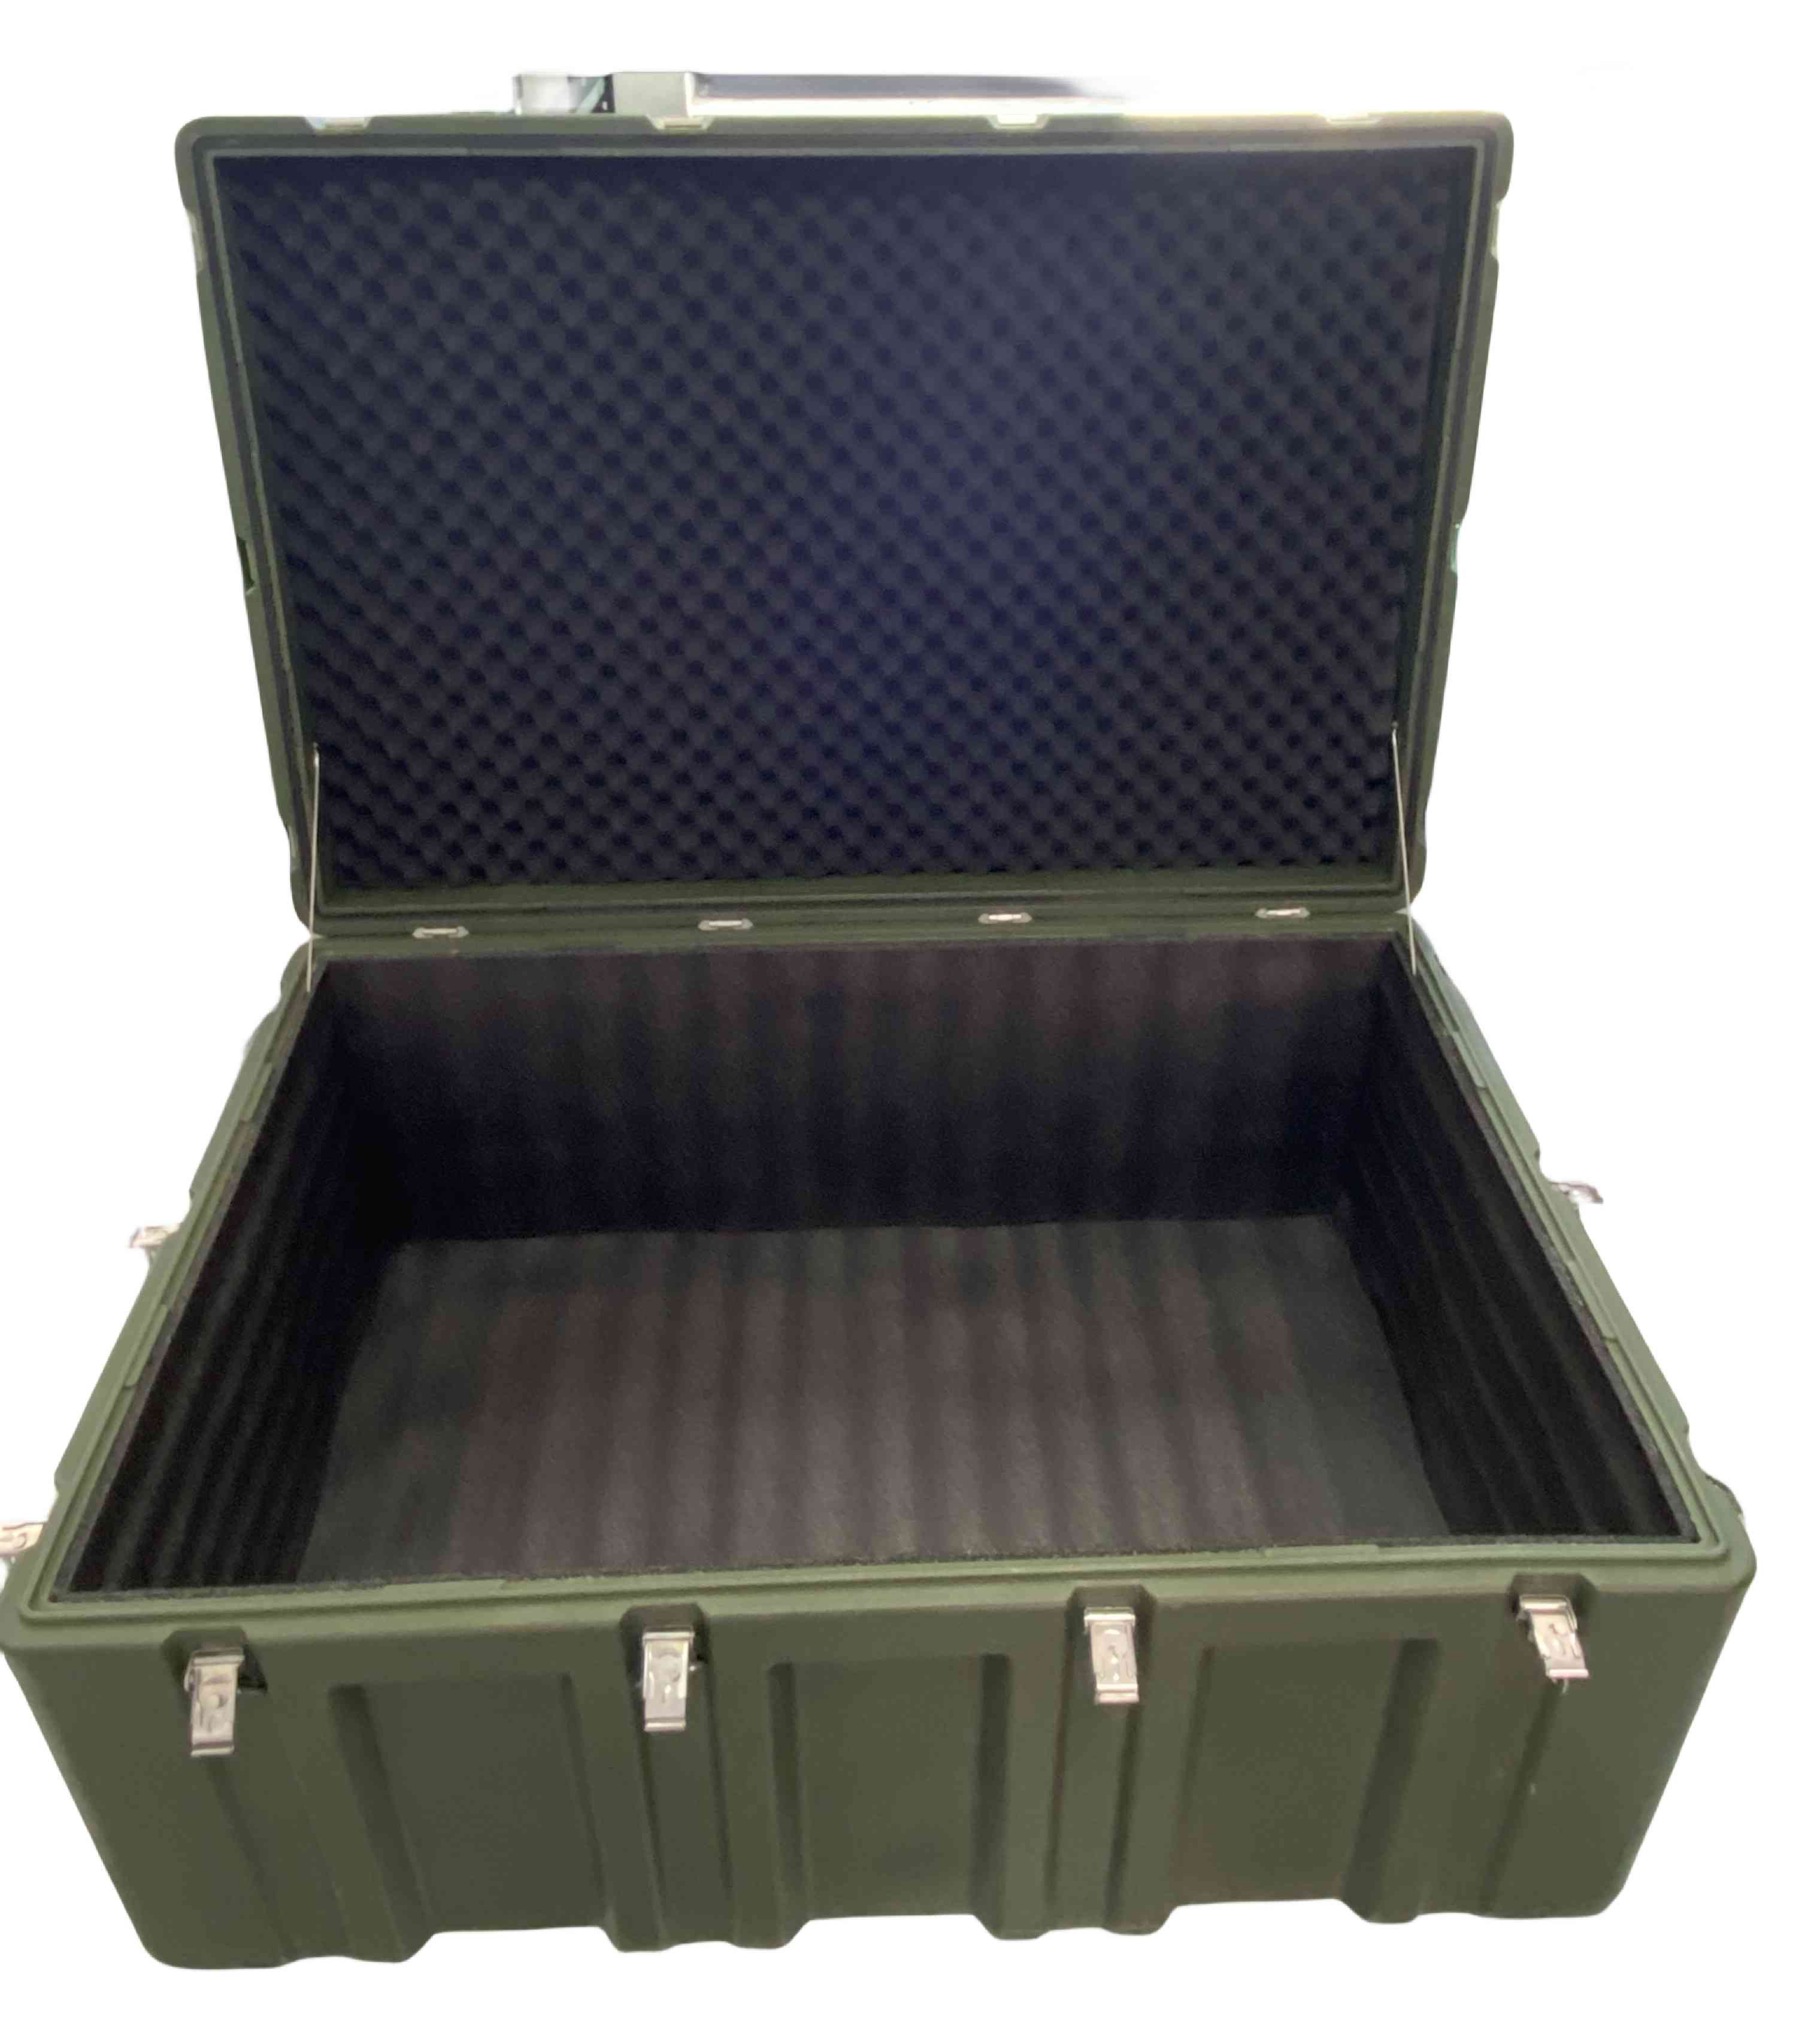 滚塑军用箱作为重要的储存设备在近年来得到了广泛应用